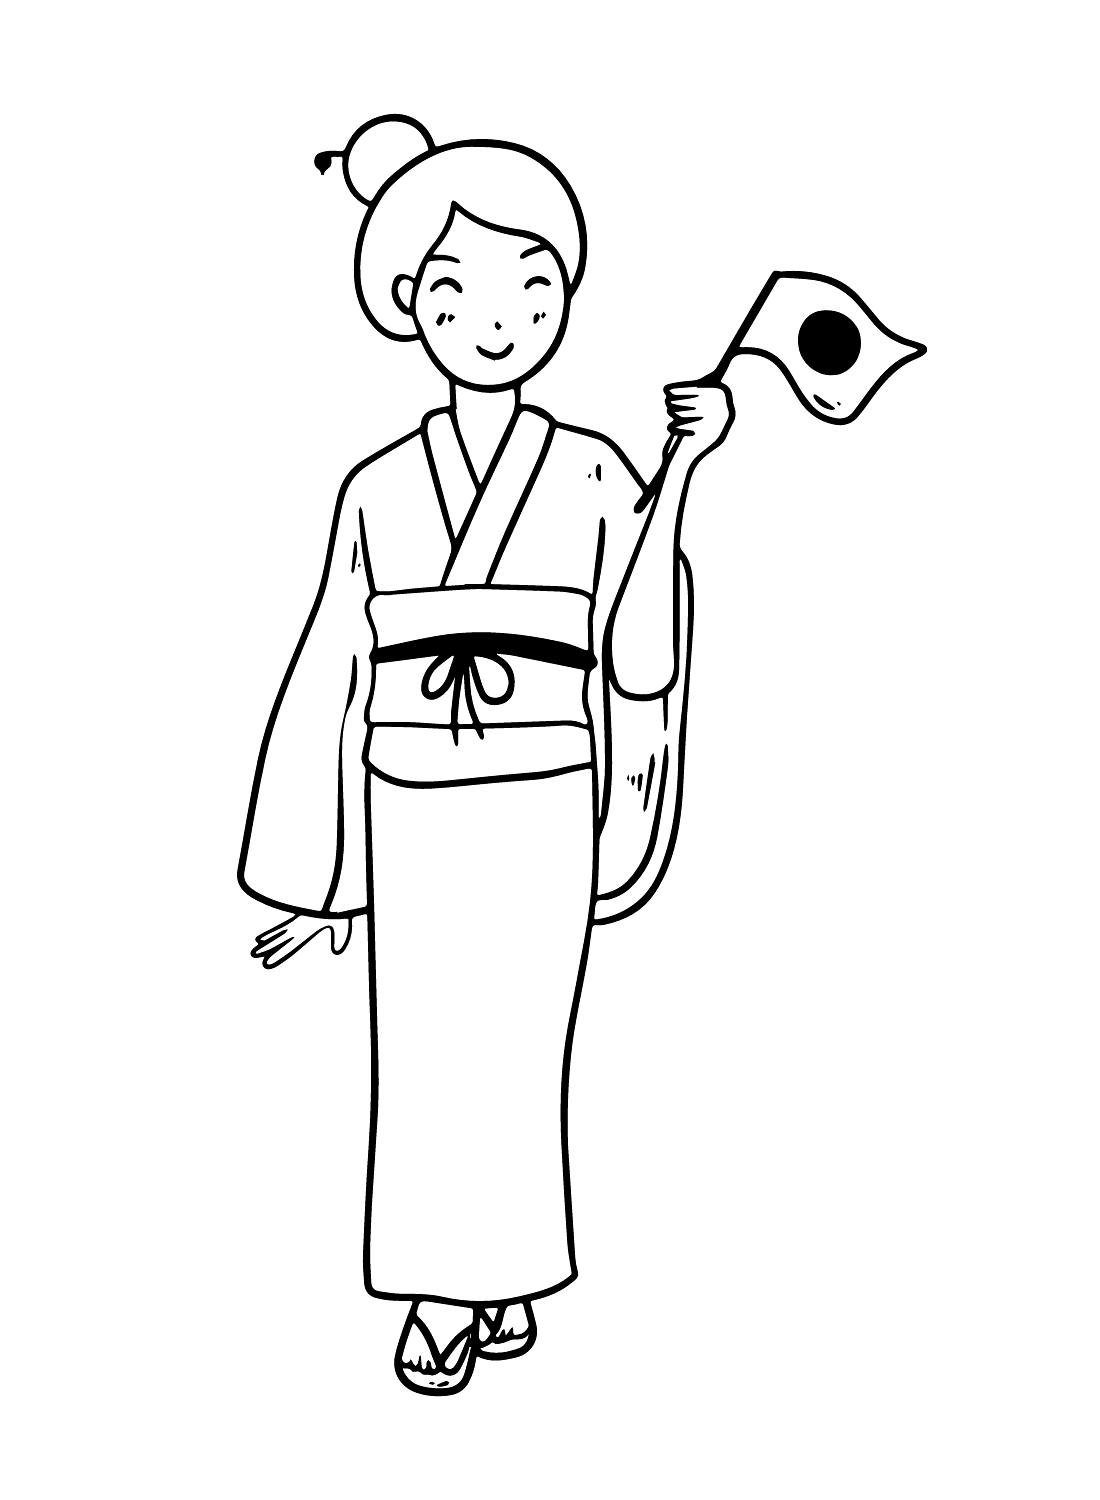 امرأة يابانية تحمل علم اليابان من اليابان